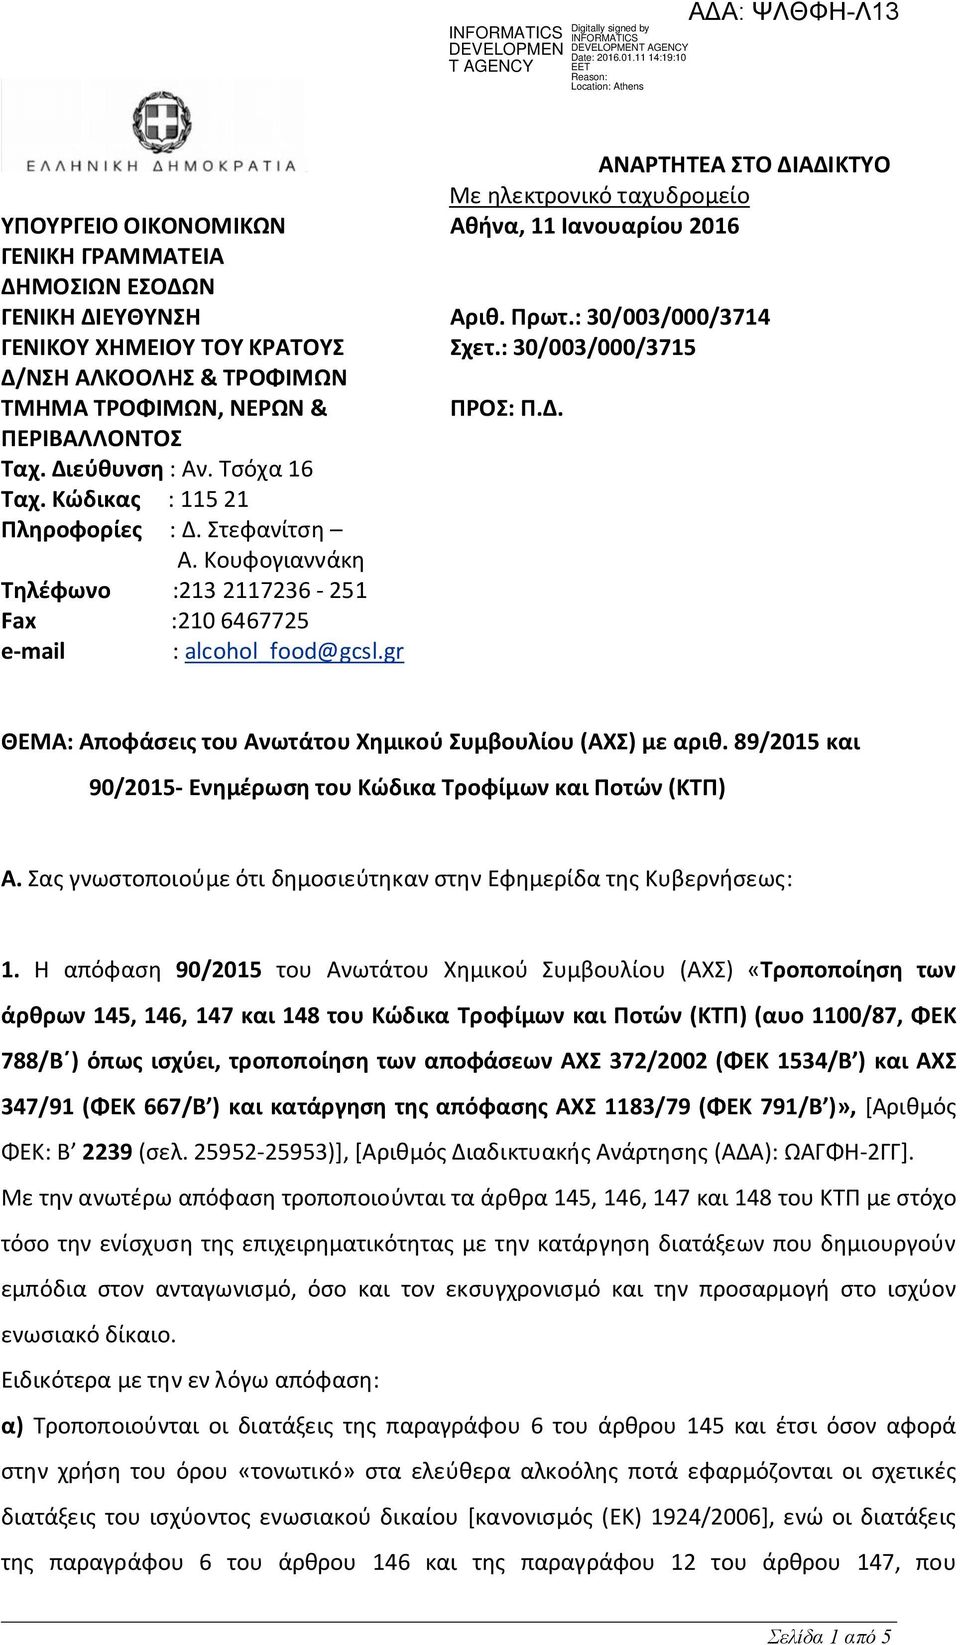 Κώδικας : 115 21 Πληροφορίες : Δ. Στεφανίτση Α. Κουφογιαννάκη Τηλέφωνο :213 2117236-251 Fax :210 6467725 e-mail : alcohol_food@gcsl.gr ΘΕΜΑ: Αποφάσεις του Ανωτάτου Χημικού Συμβουλίου (ΑΧΣ) με αριθ.